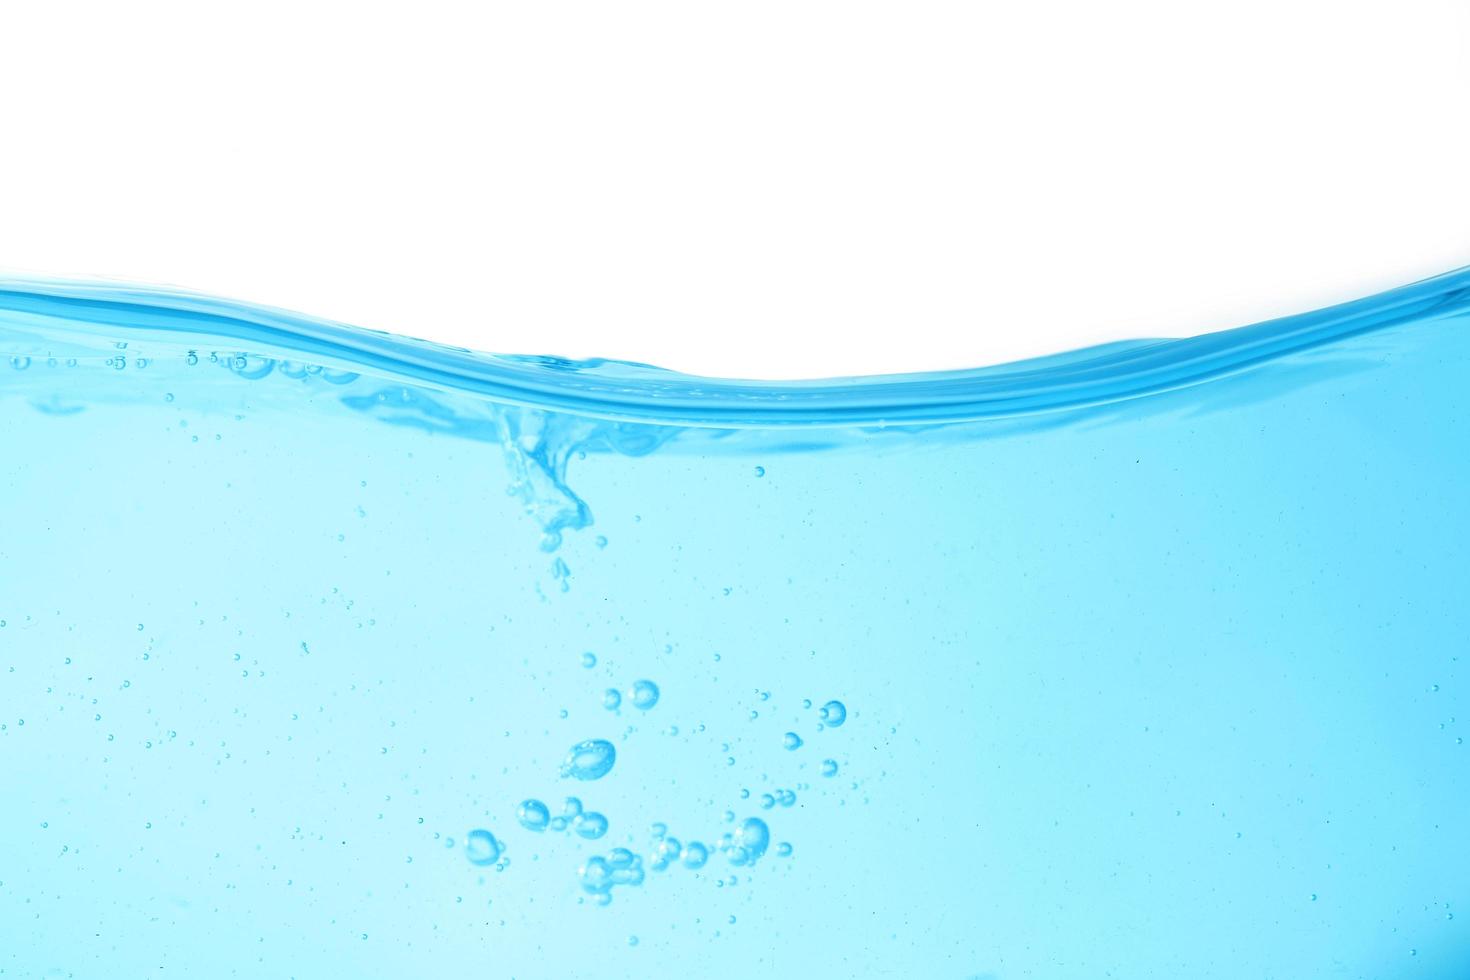 L'eau de surface bleu et bulle d'air isolé sur fond blanc photo